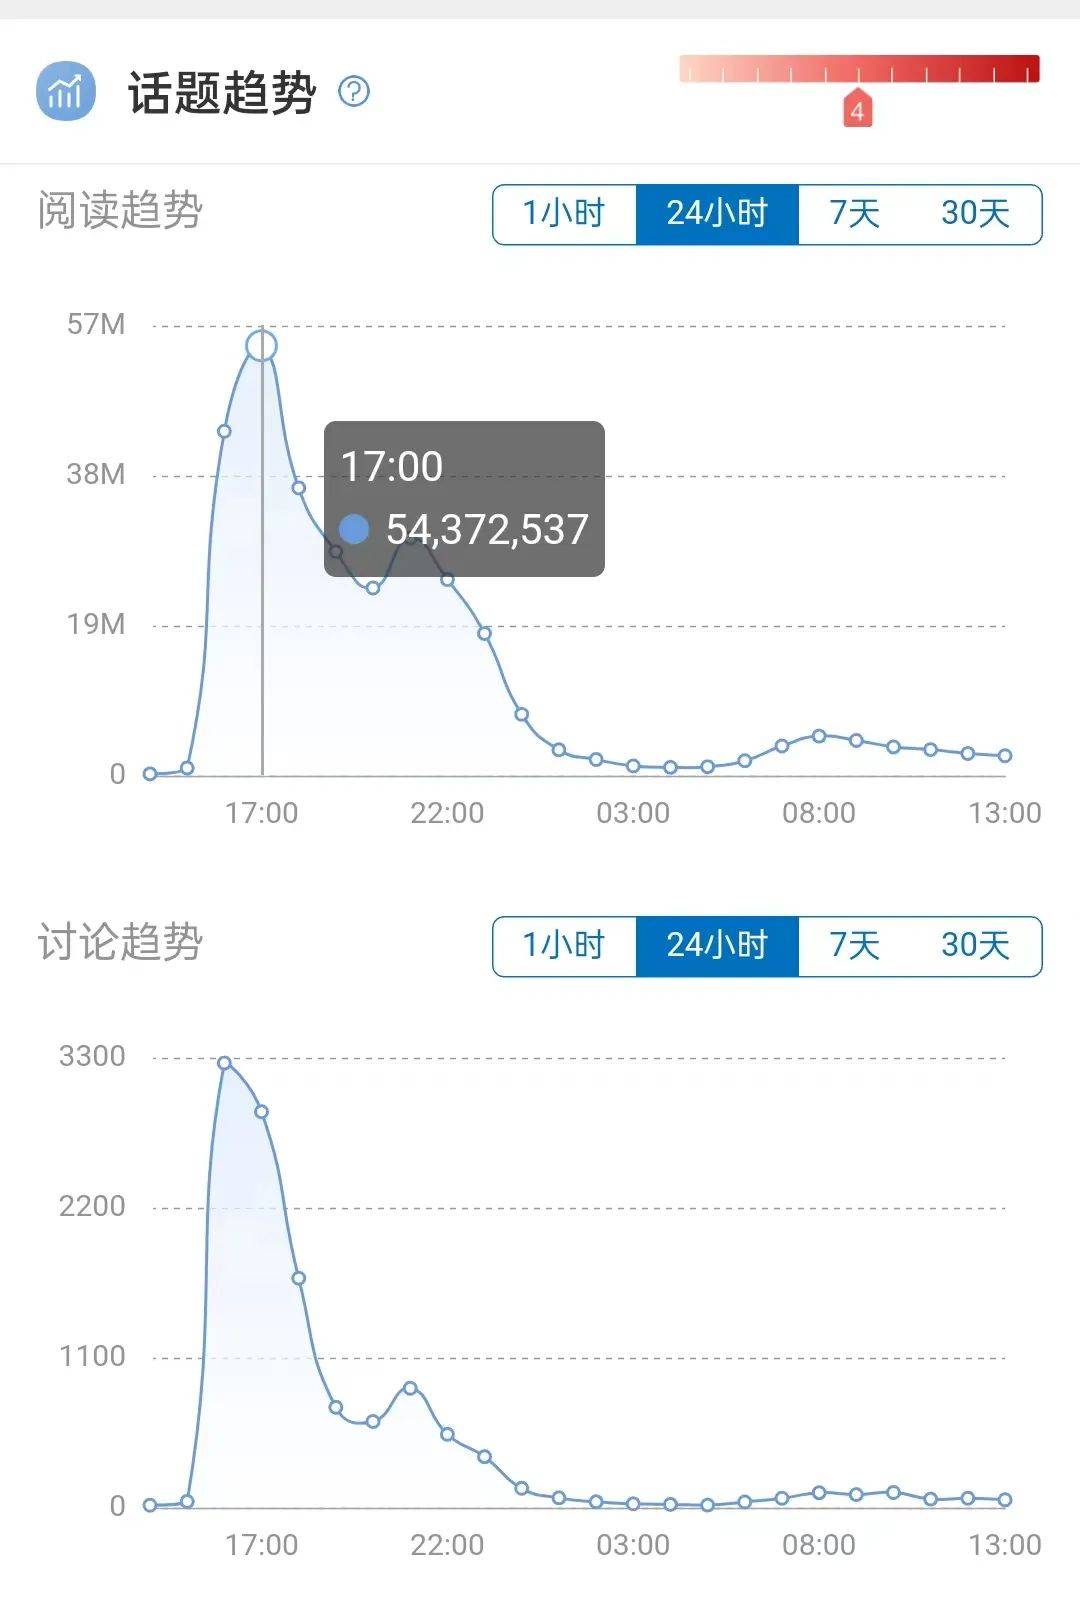 送死型话题#上海平均月薪10605元#，为什么还有人做？